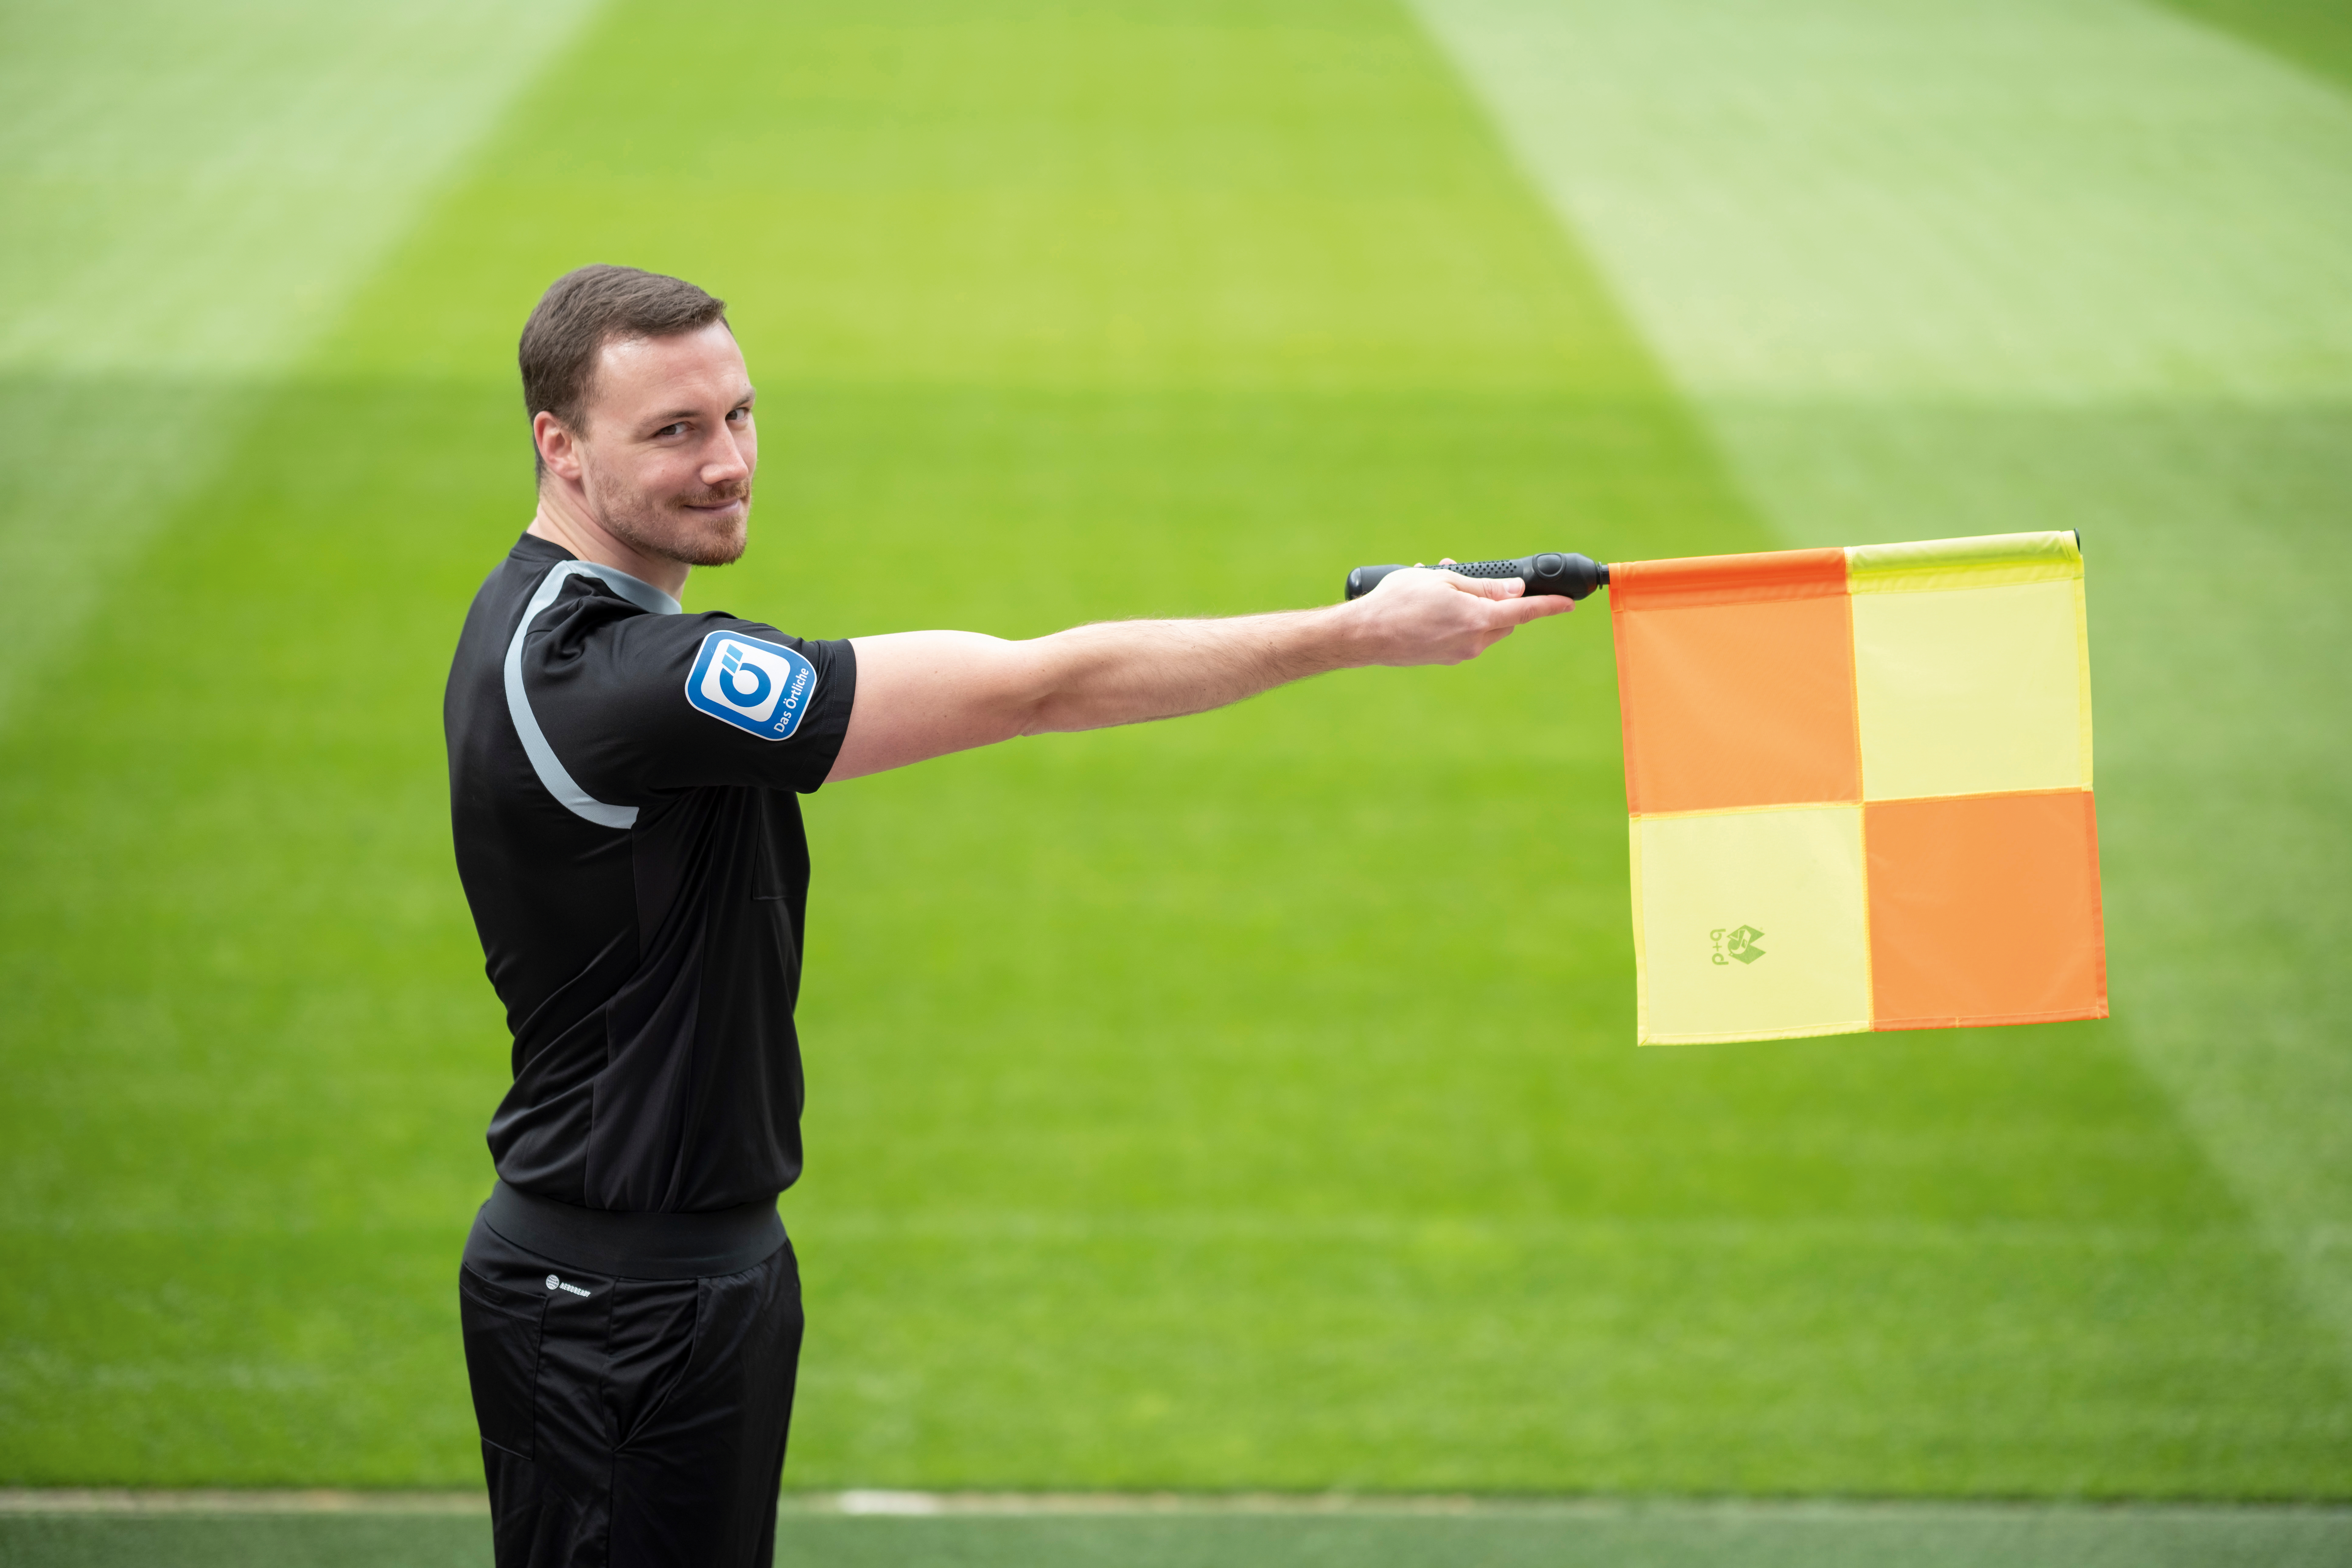  Schiedsrichterassistent Philipp Hüwe hebt auf einem Fußballfeld eine Fahne.